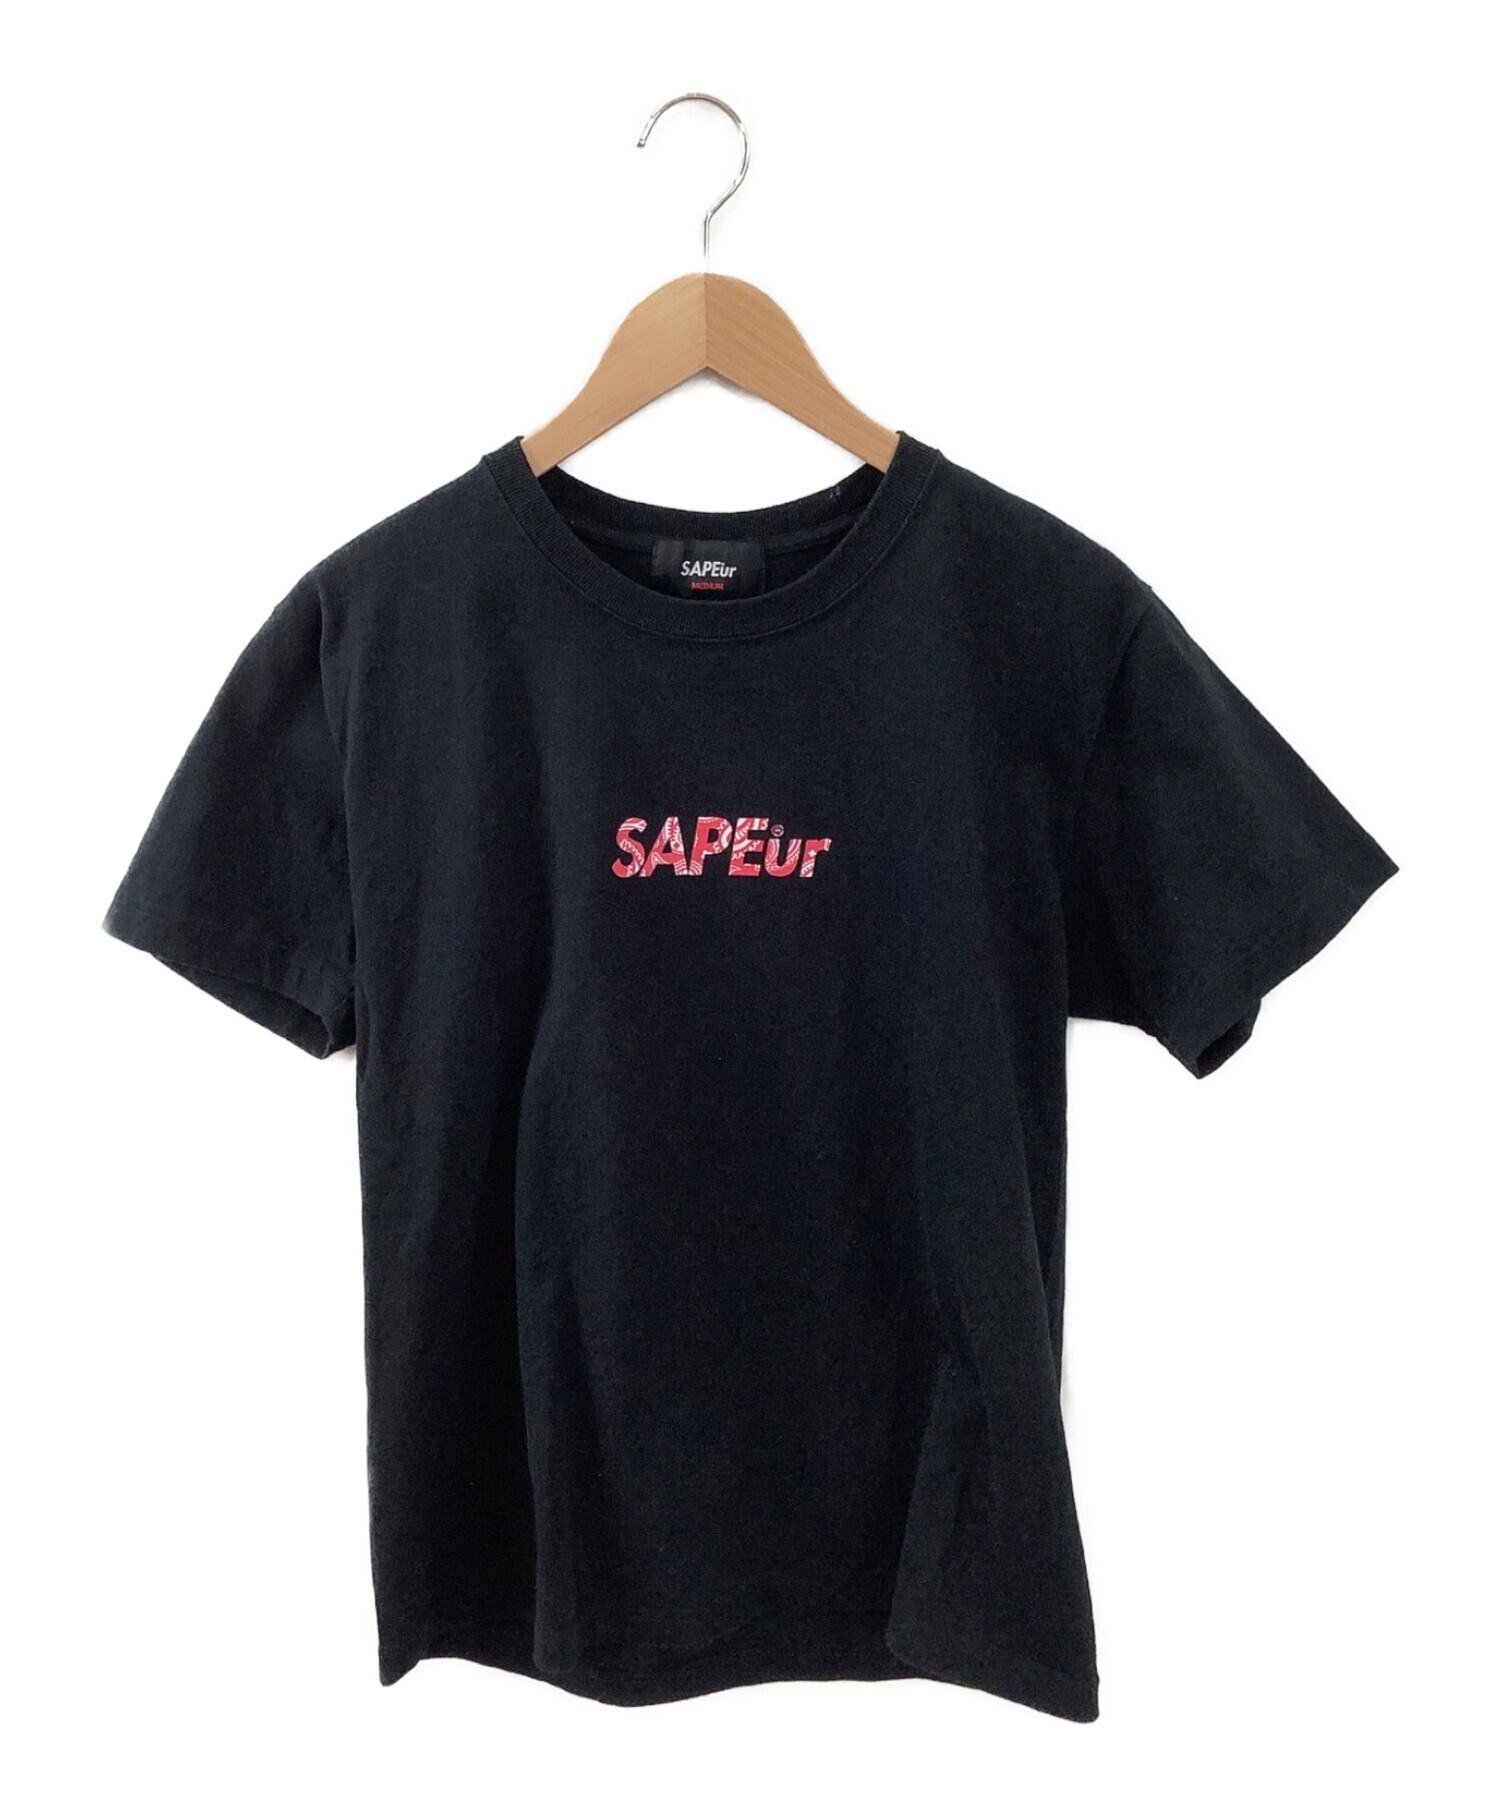 SAPEur (サプール) Tシャツ ブラック サイズ:M